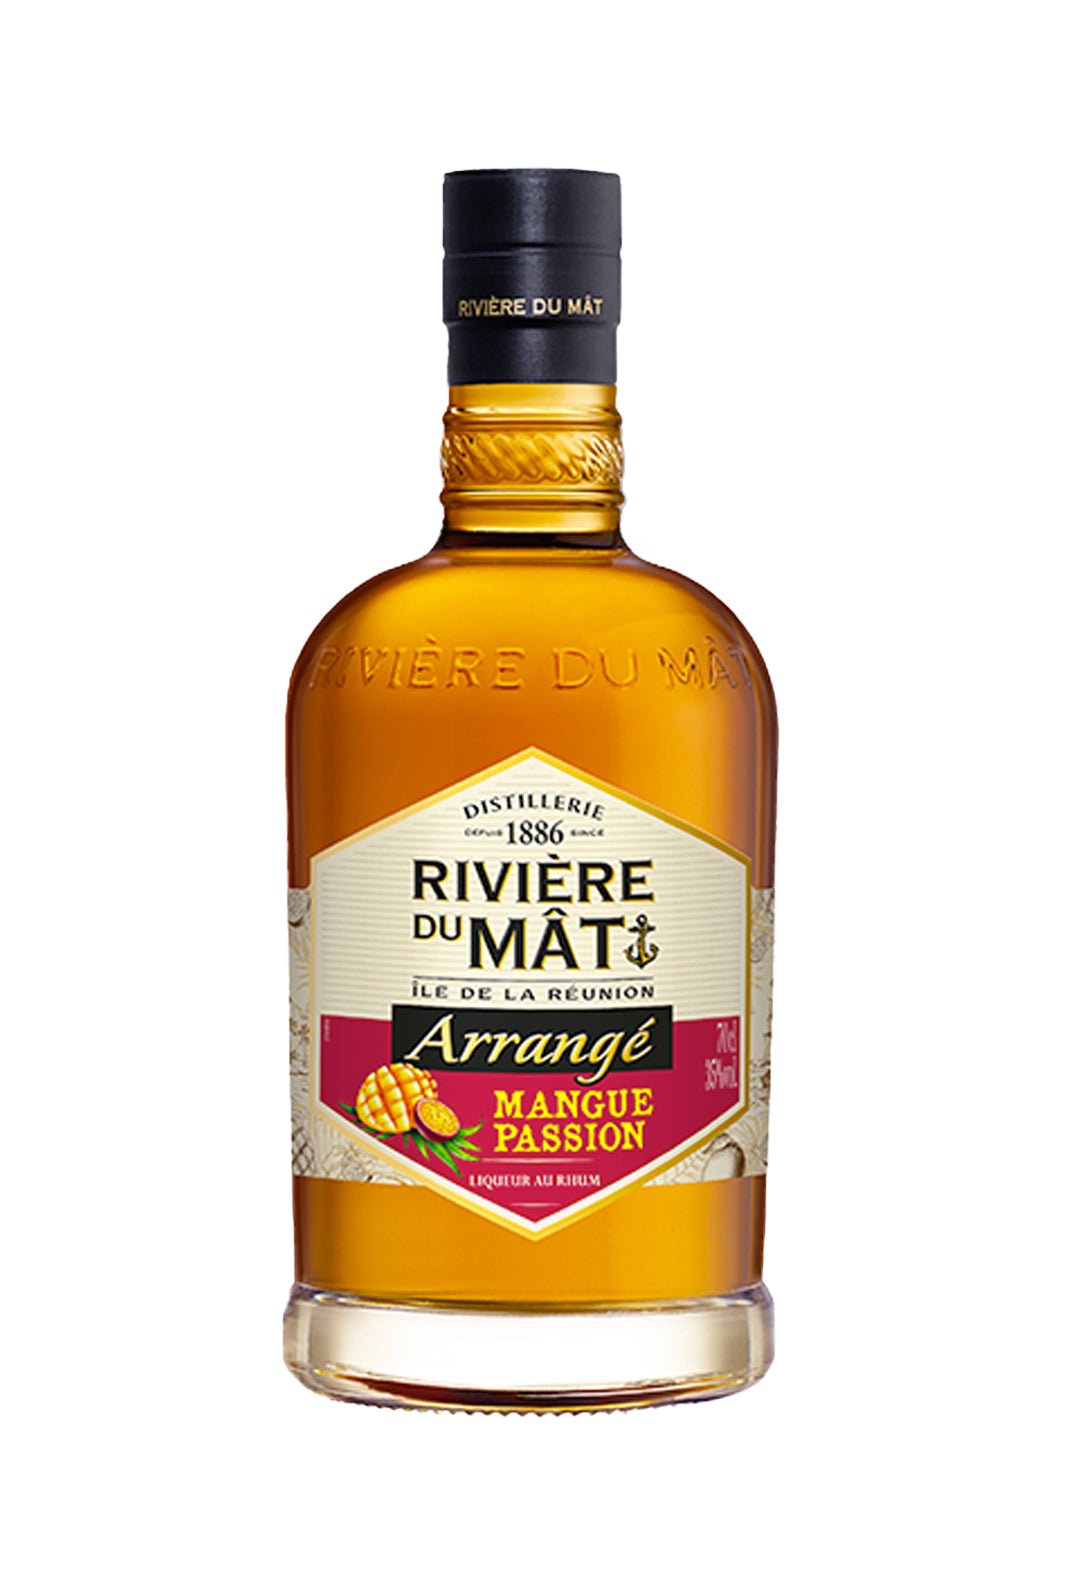 Rivière Du Mat Rum Arrange Mangue Passion (Mango-Passion) 35% 700ml | Rum | Shop online at Spirits of France